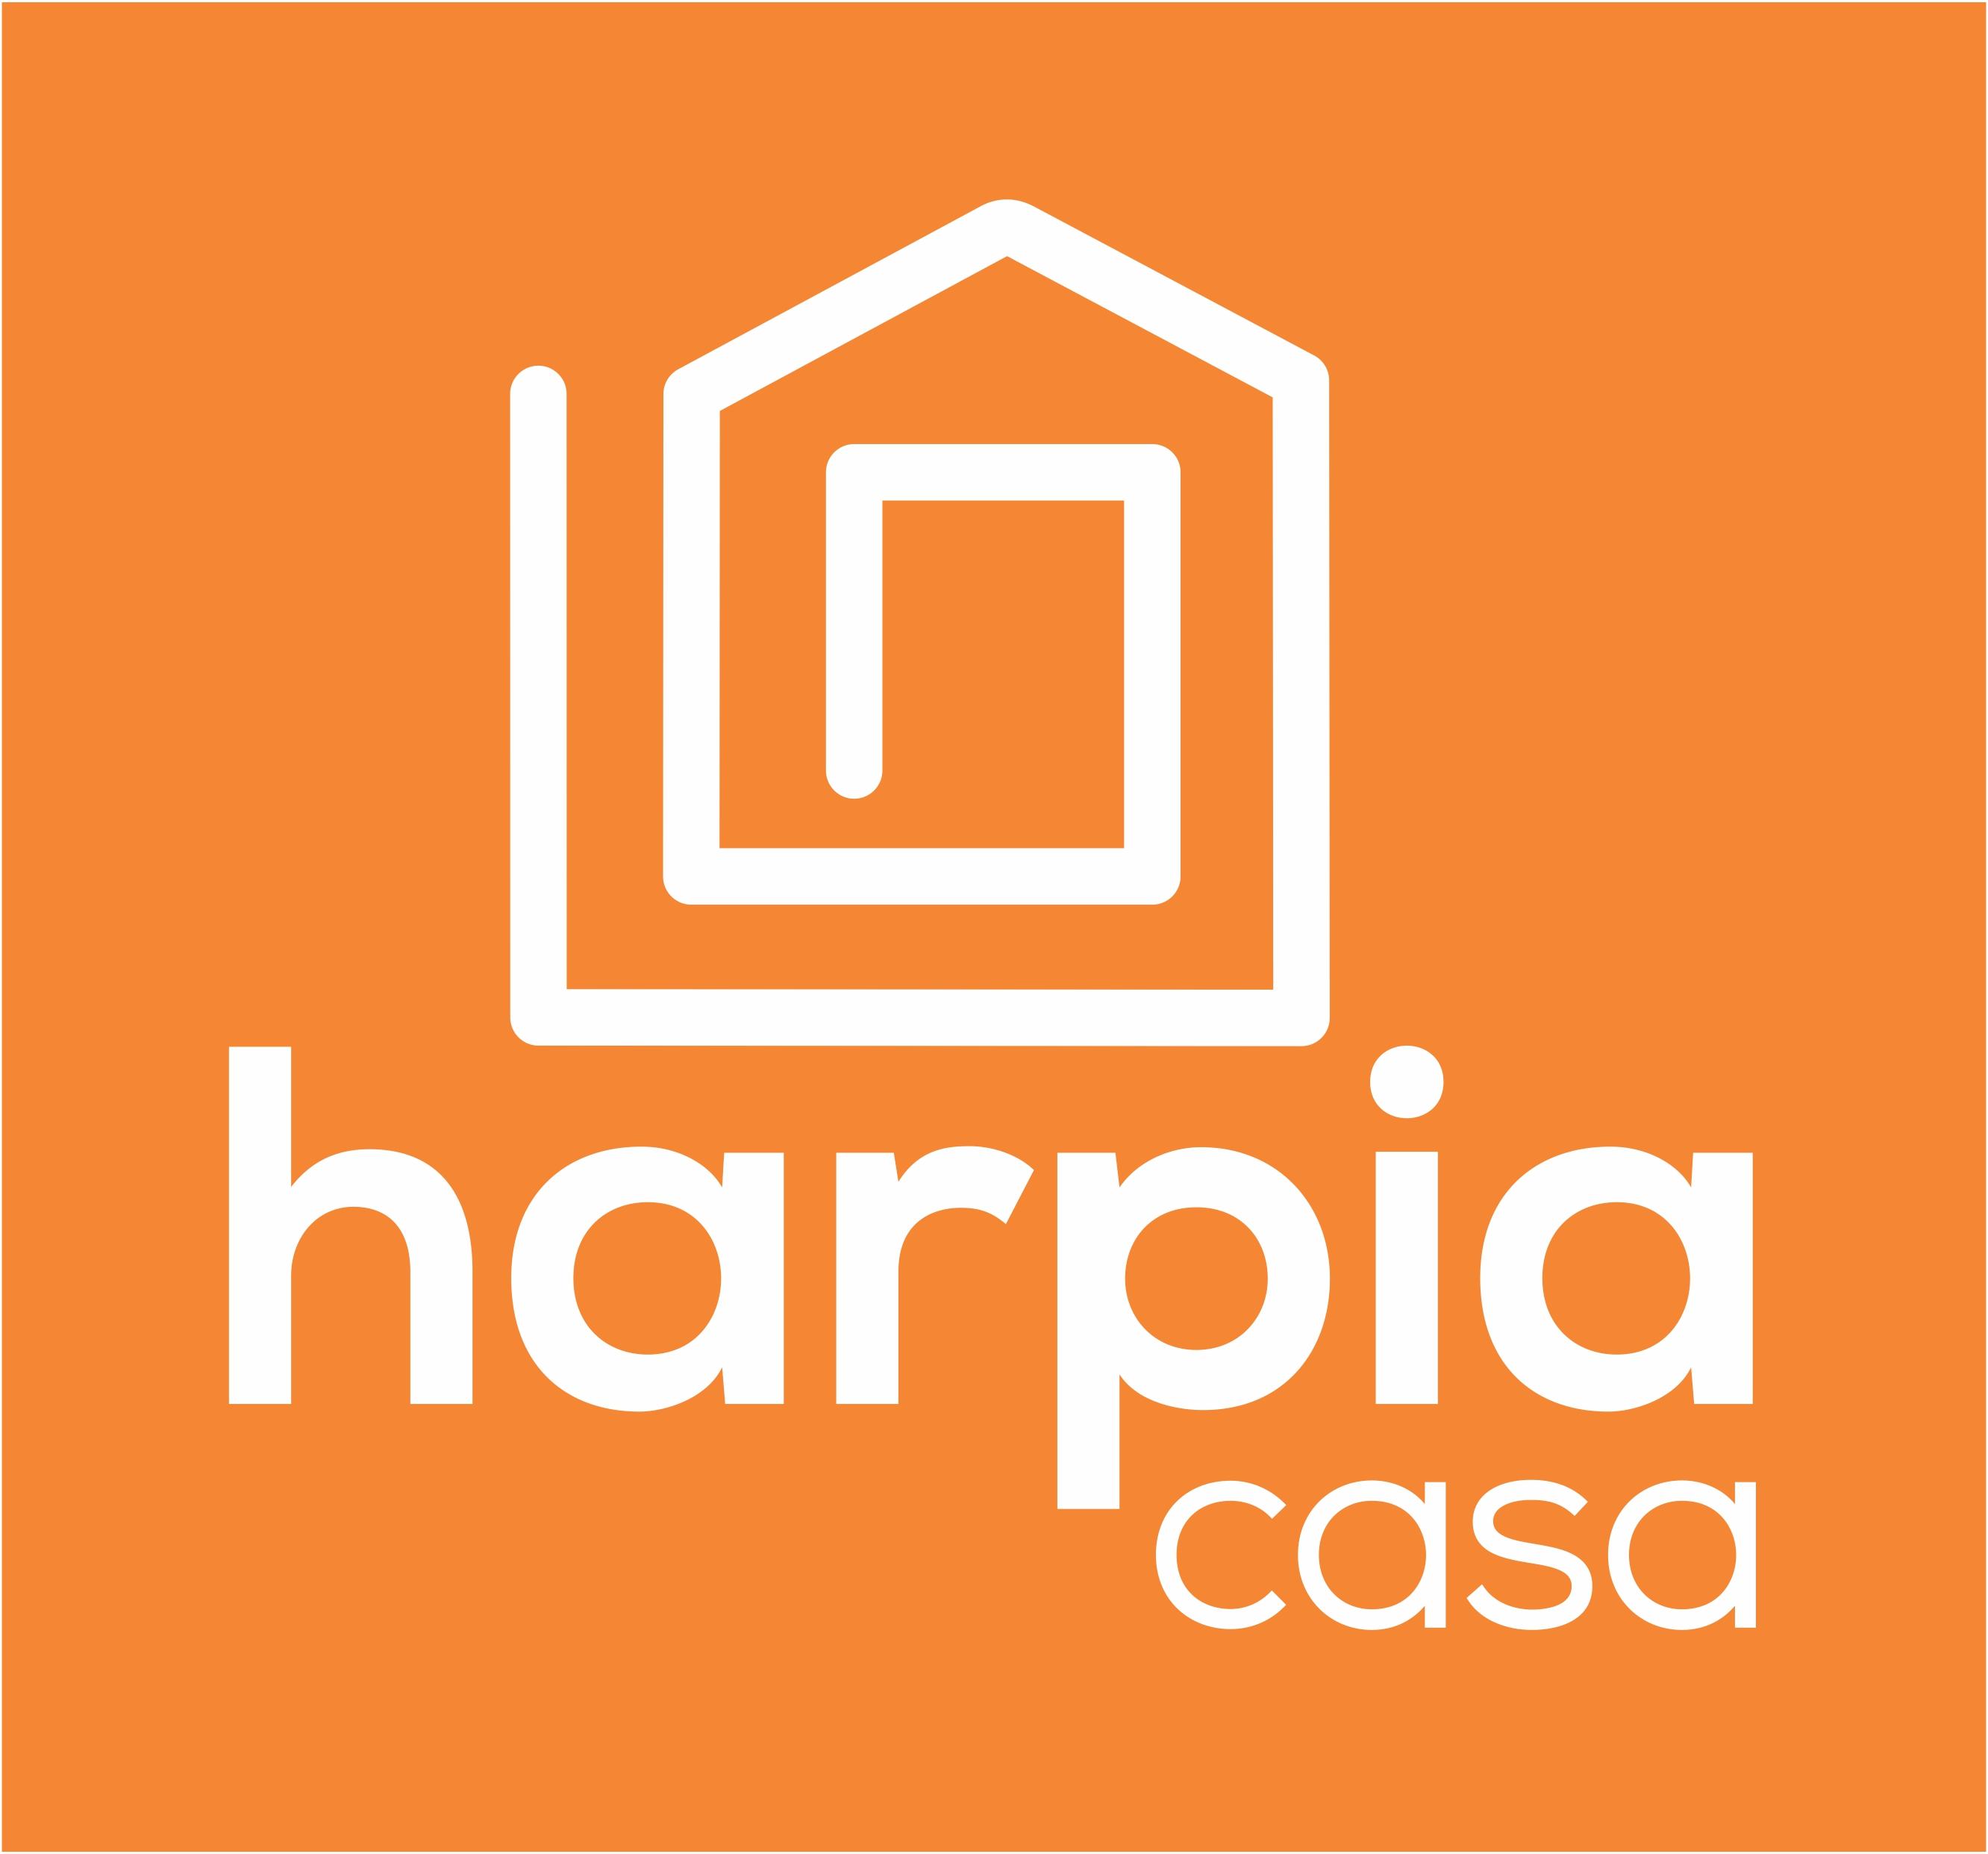 Harpia Casa